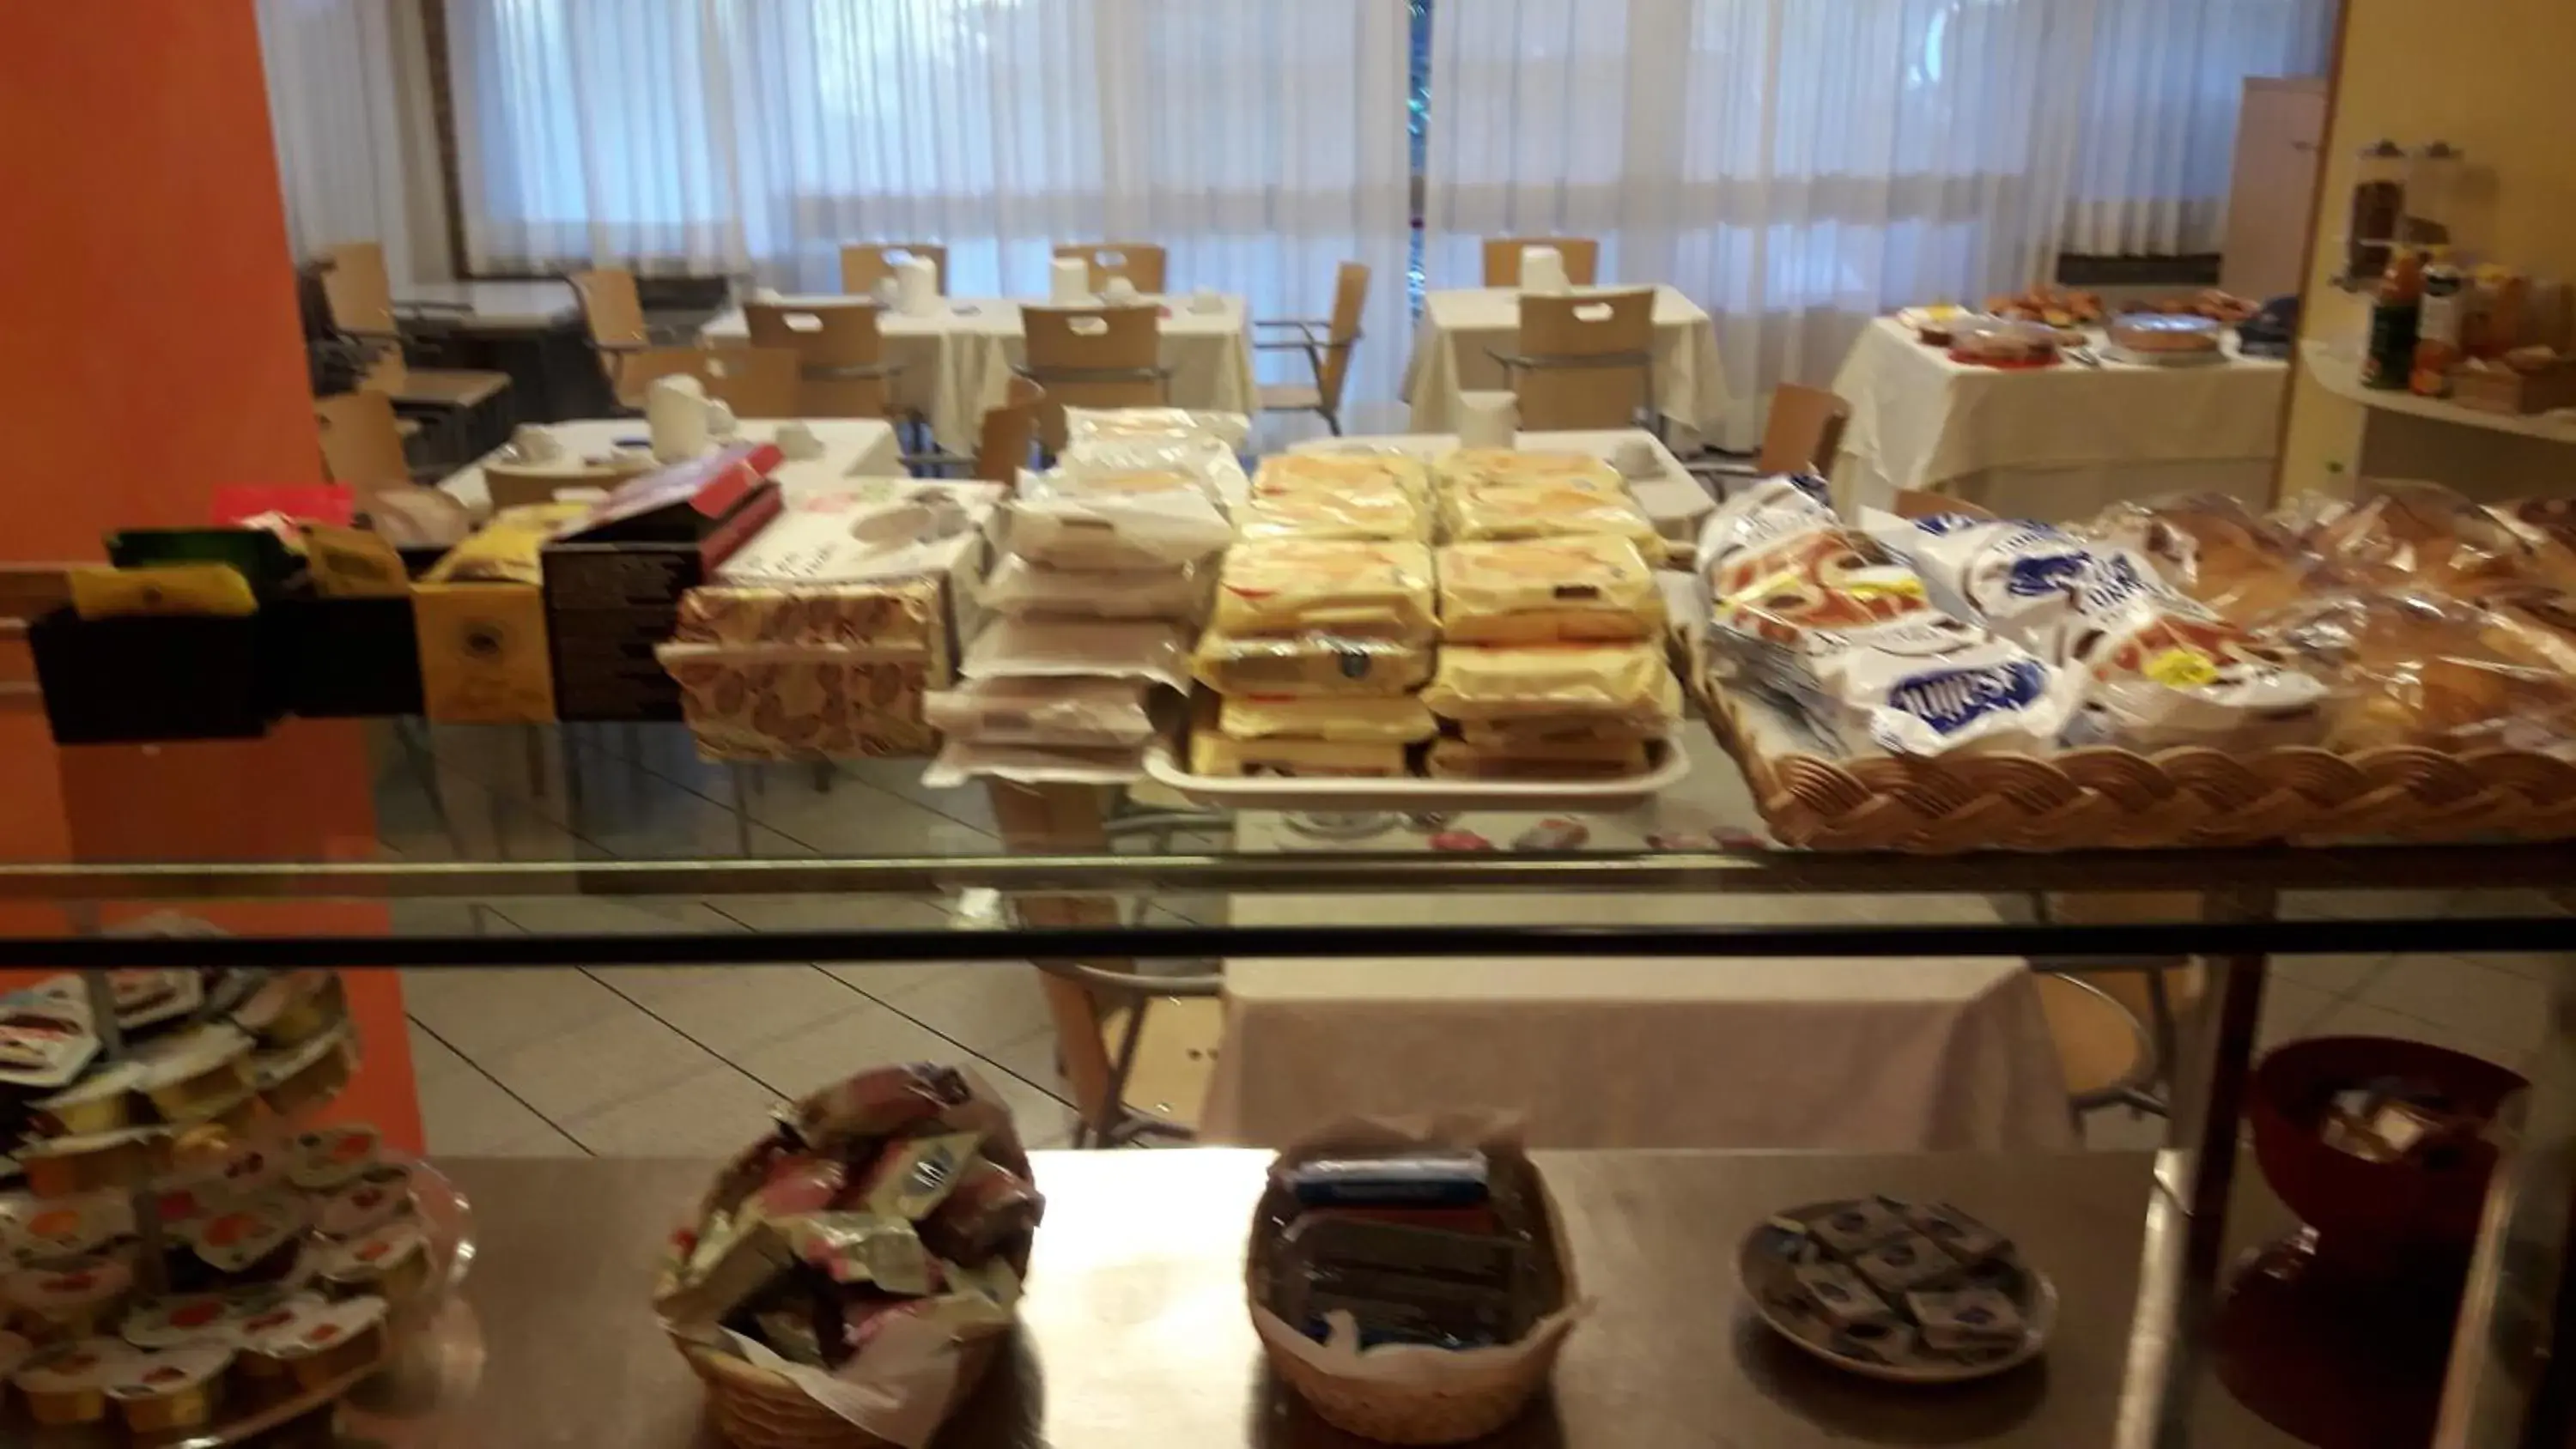 Buffet breakfast in Albergo Nyers